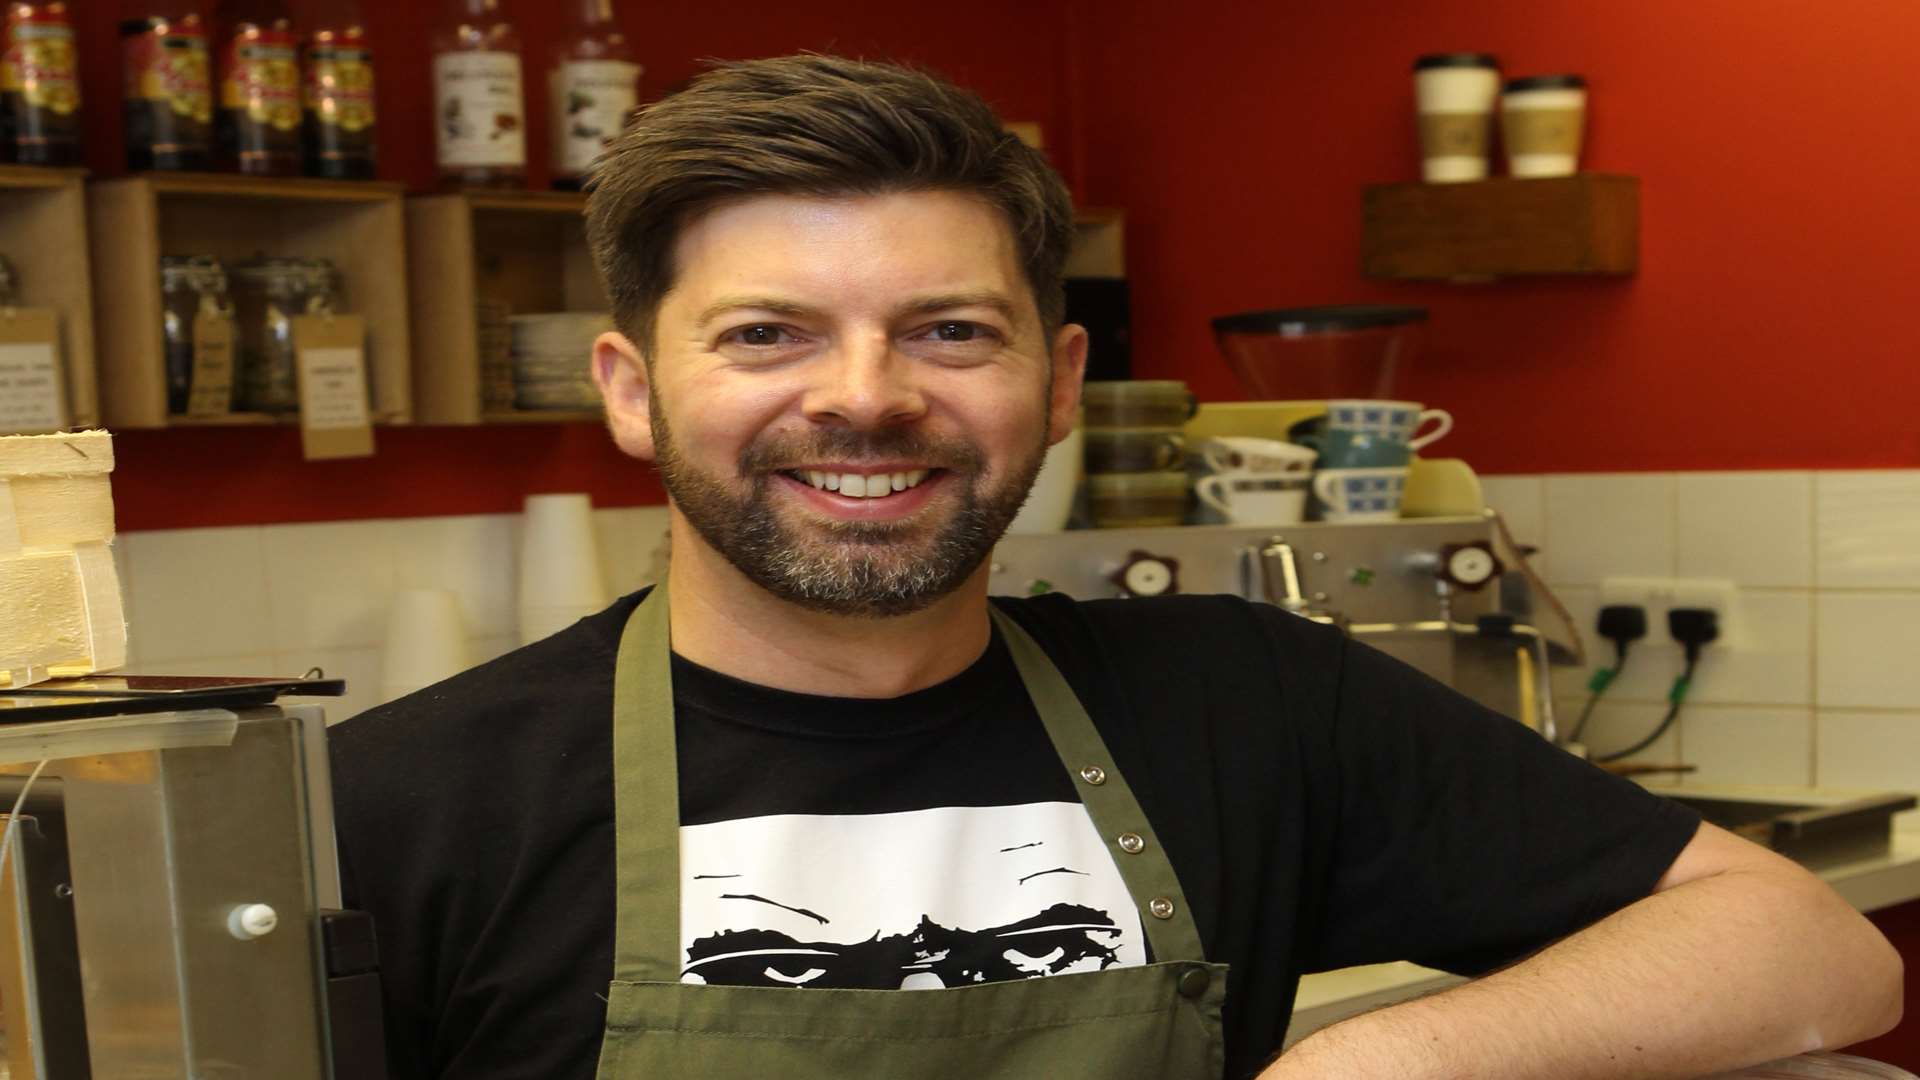 Café owner James Hooper